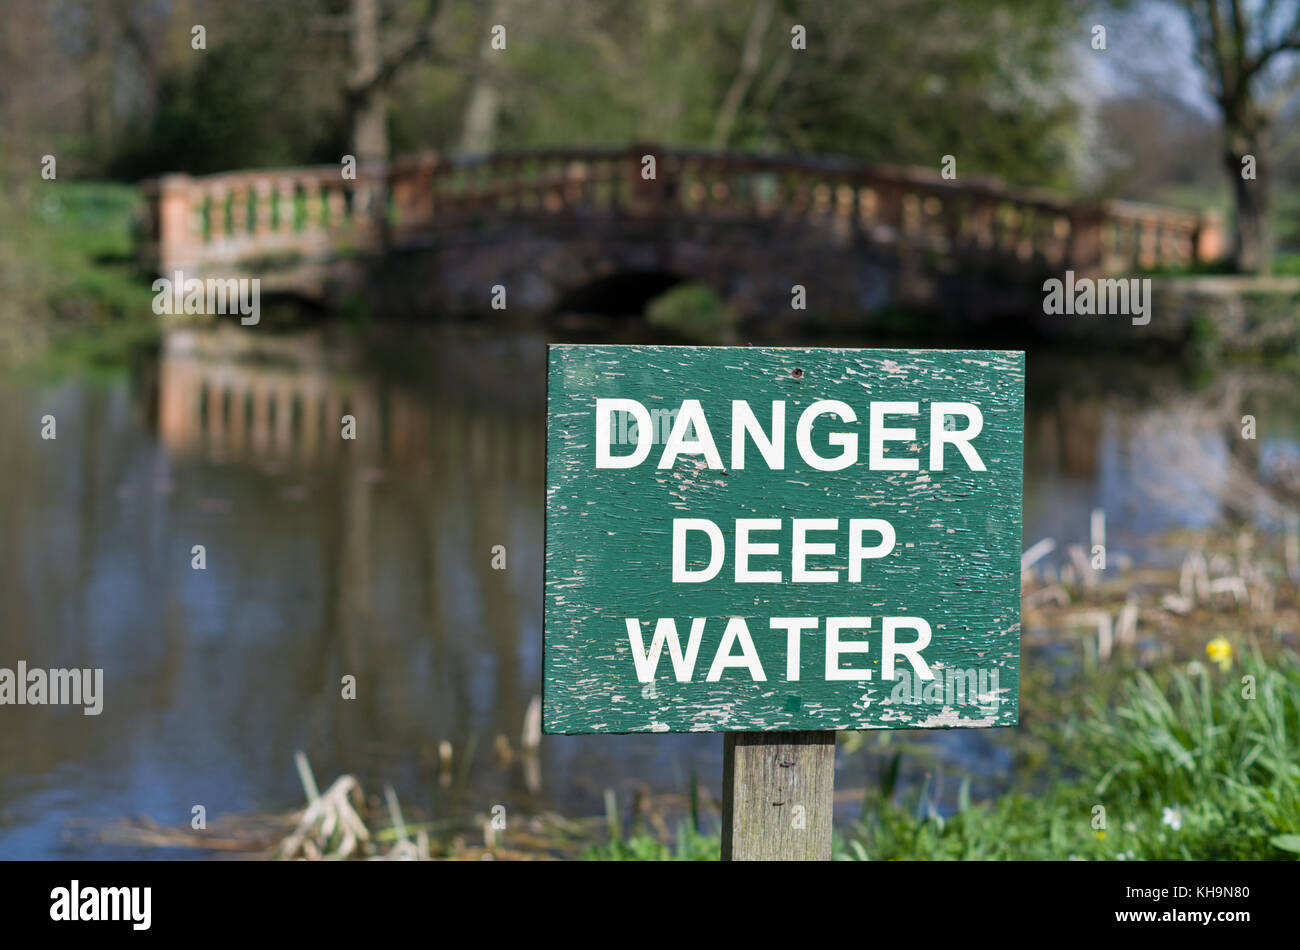 L'eau profonde de danger panneau d'avertissement sur un lac dans le parc du Château Ashby Gardens, hors focus bridge en arrière-plan ; Northamptonshire, Angleterre Banque D'Images